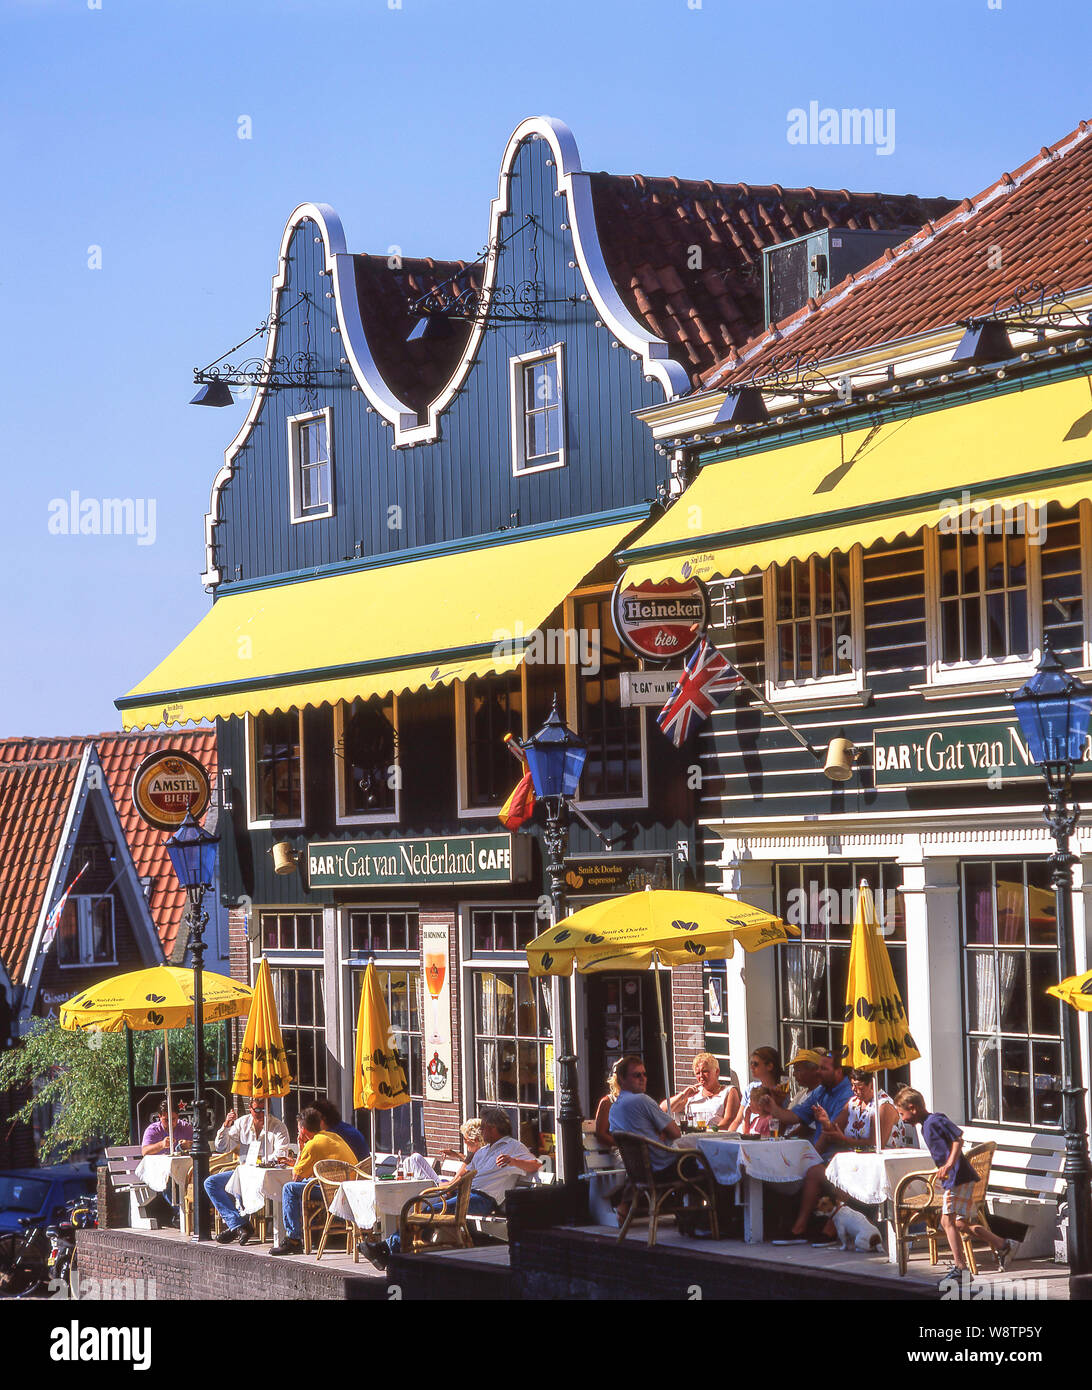 't Gat van Nederland Cafe, Brugstraat, Volendam, Noord-Holland, Kingdom of the Netherlands Stock Photo